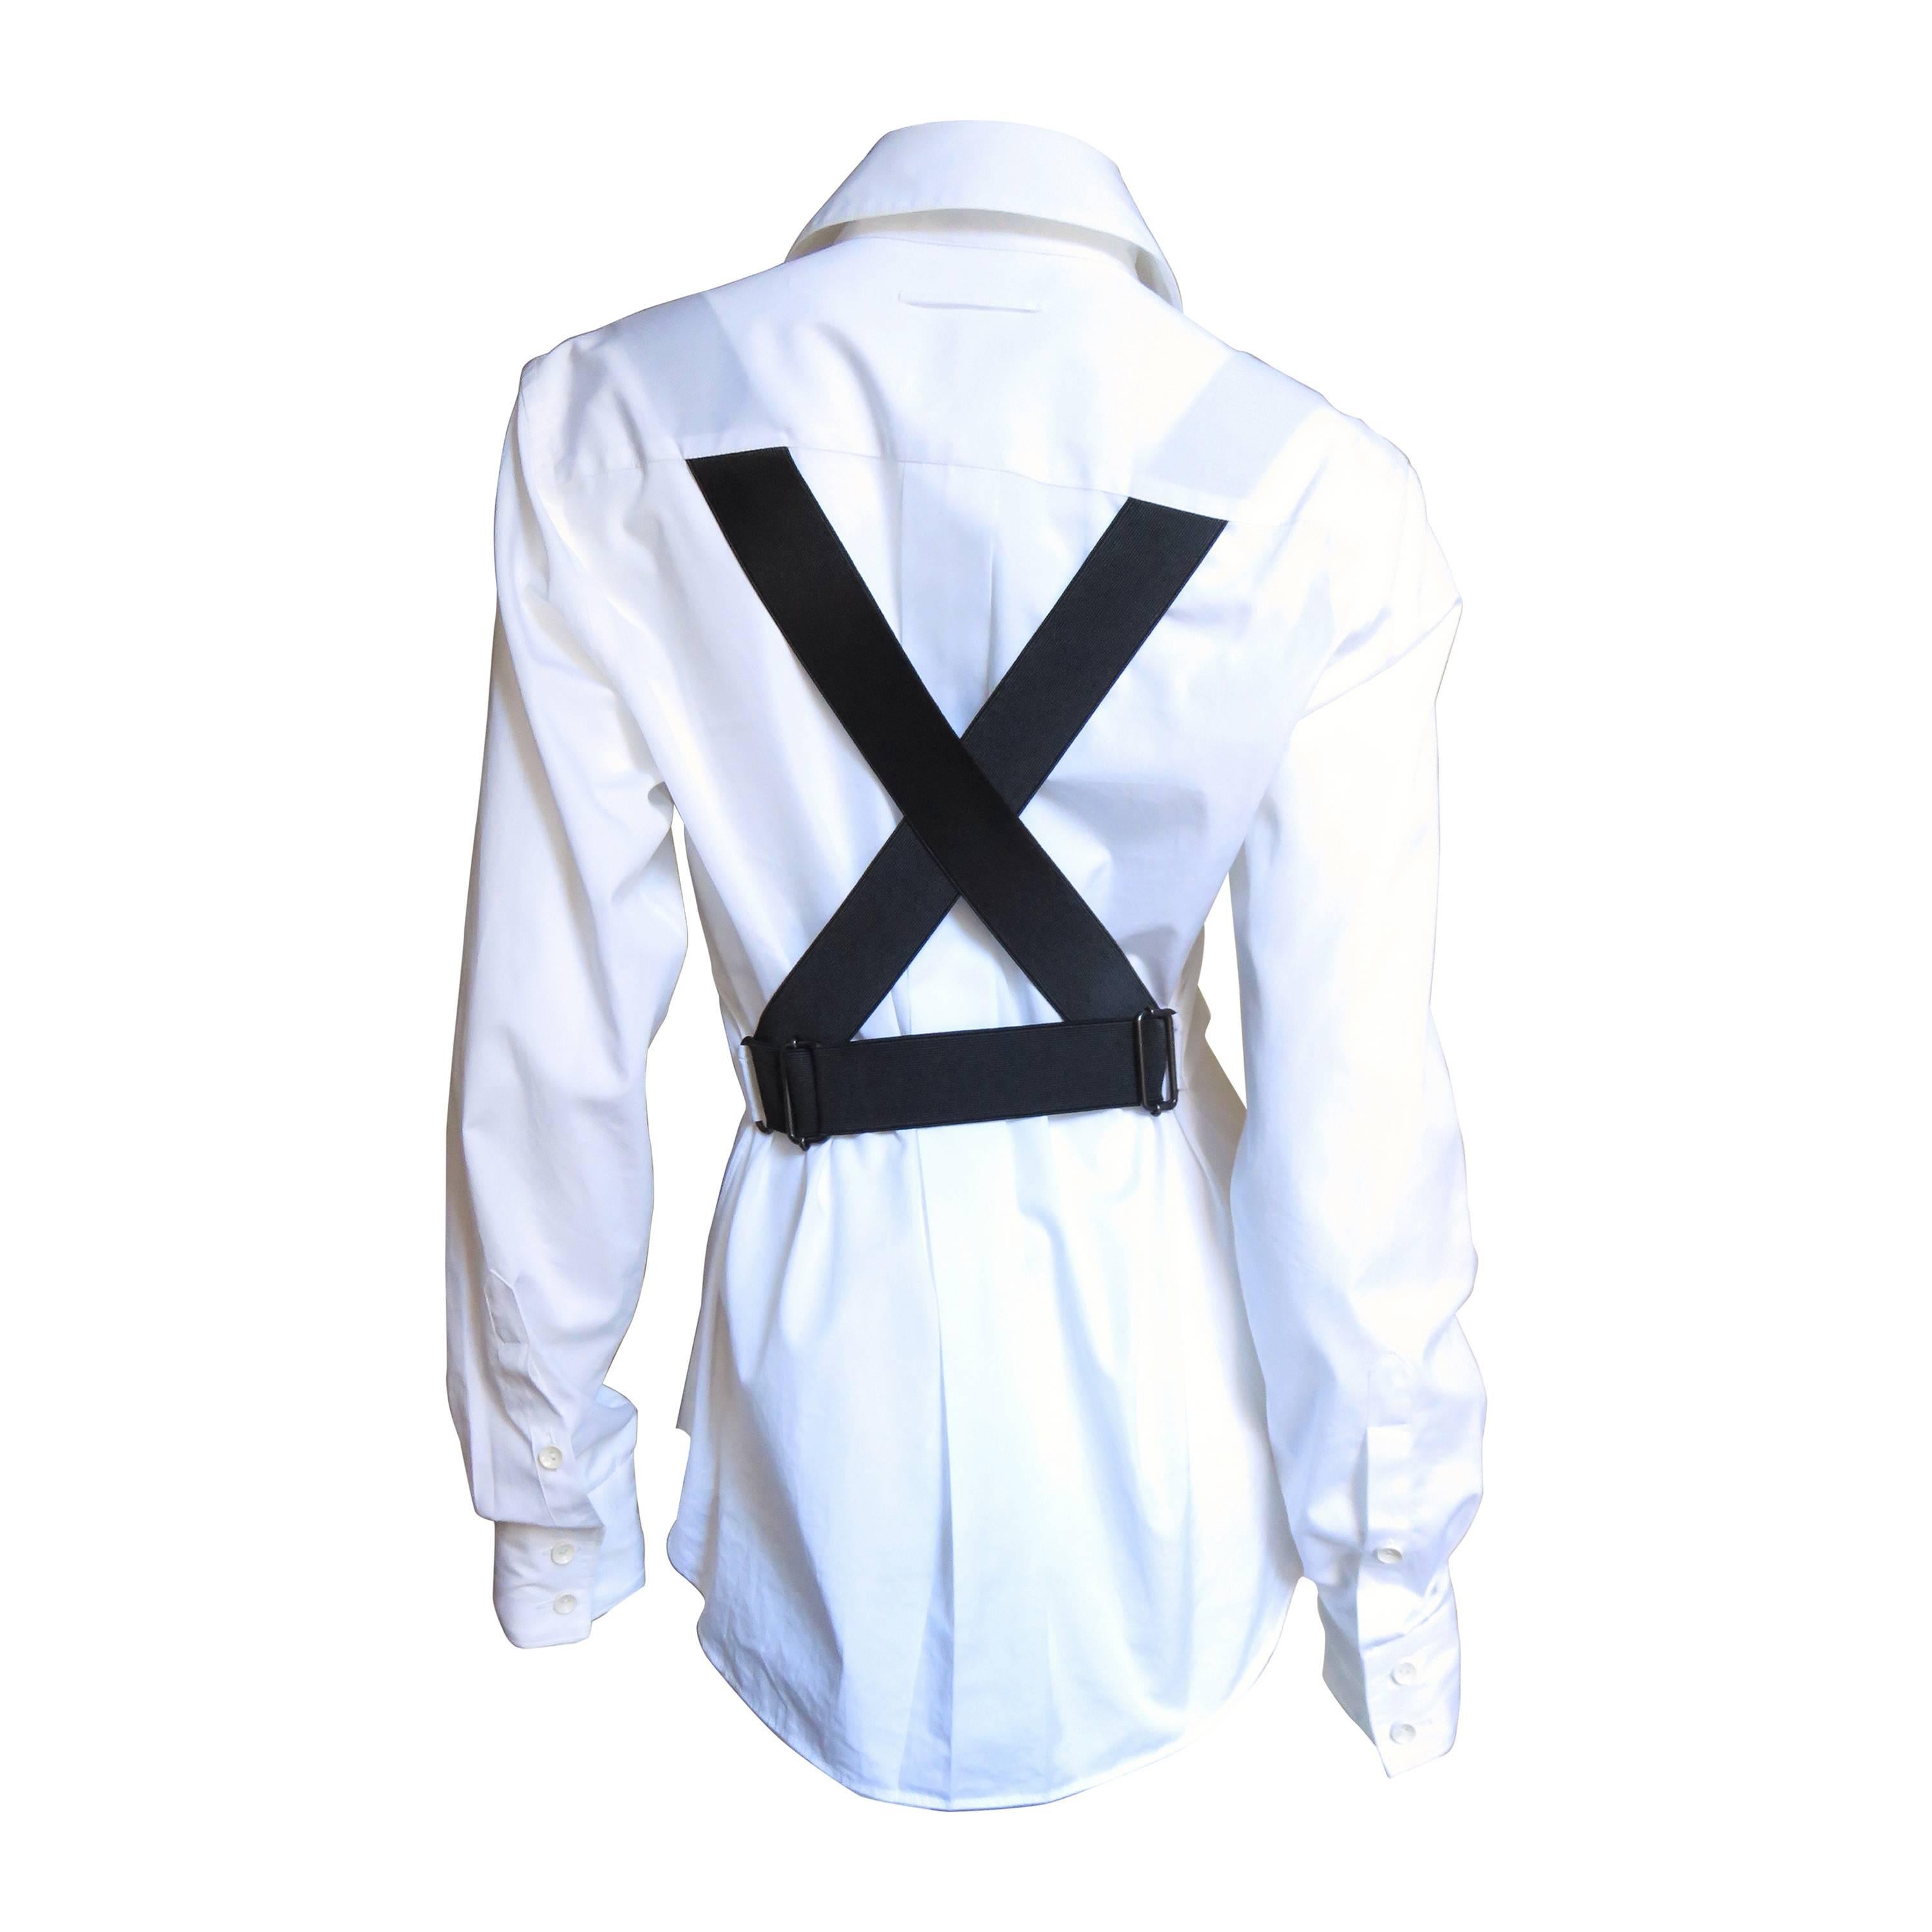 Fabulous Gaultier Cross Back White Shirt